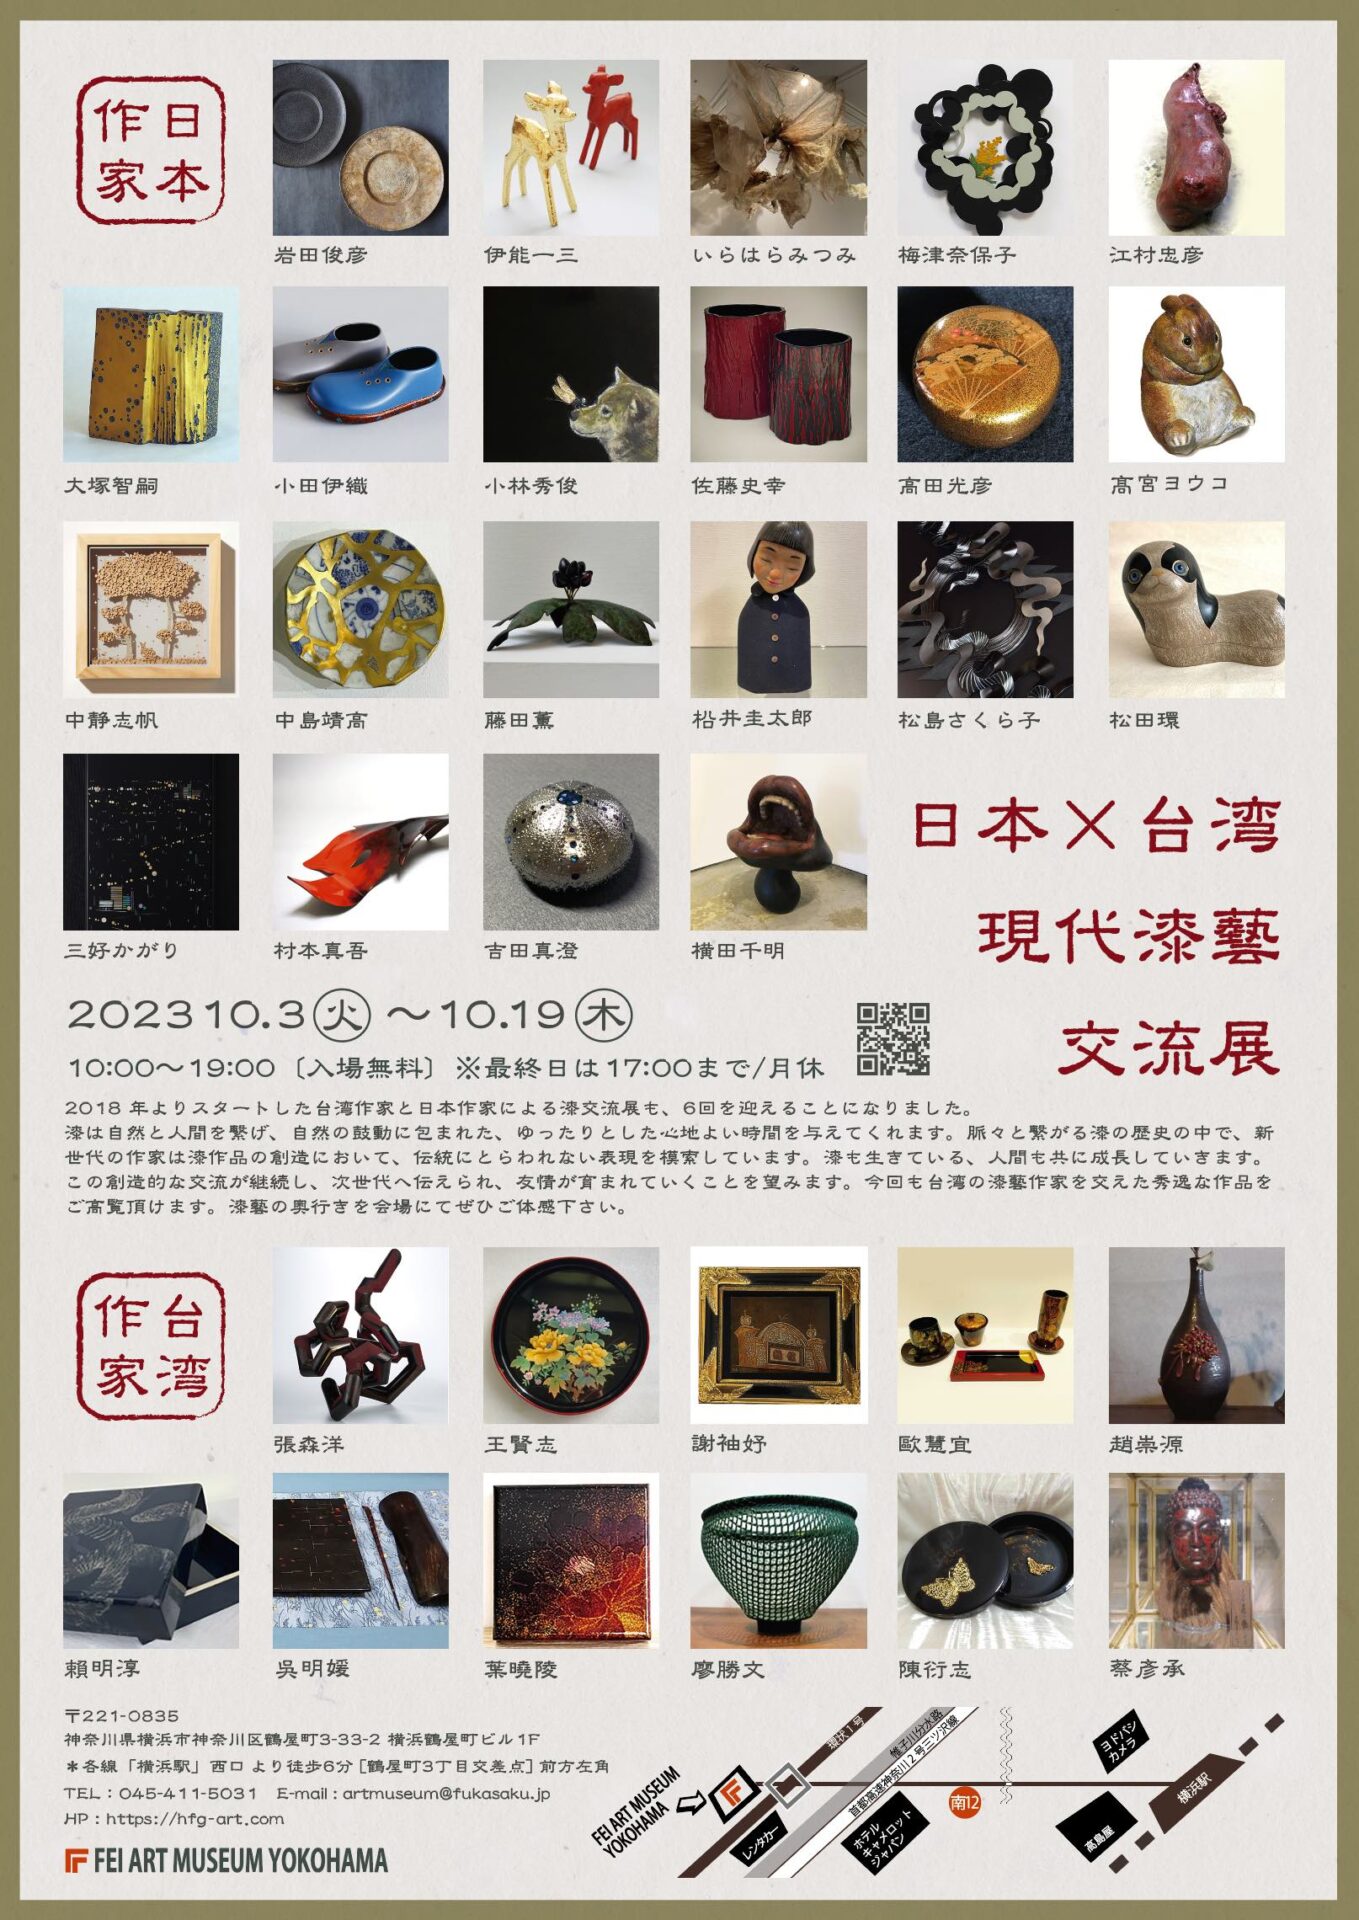 日本×台湾 現代漆藝交流展 » Hideharu Fukasaku Gallery & Museum